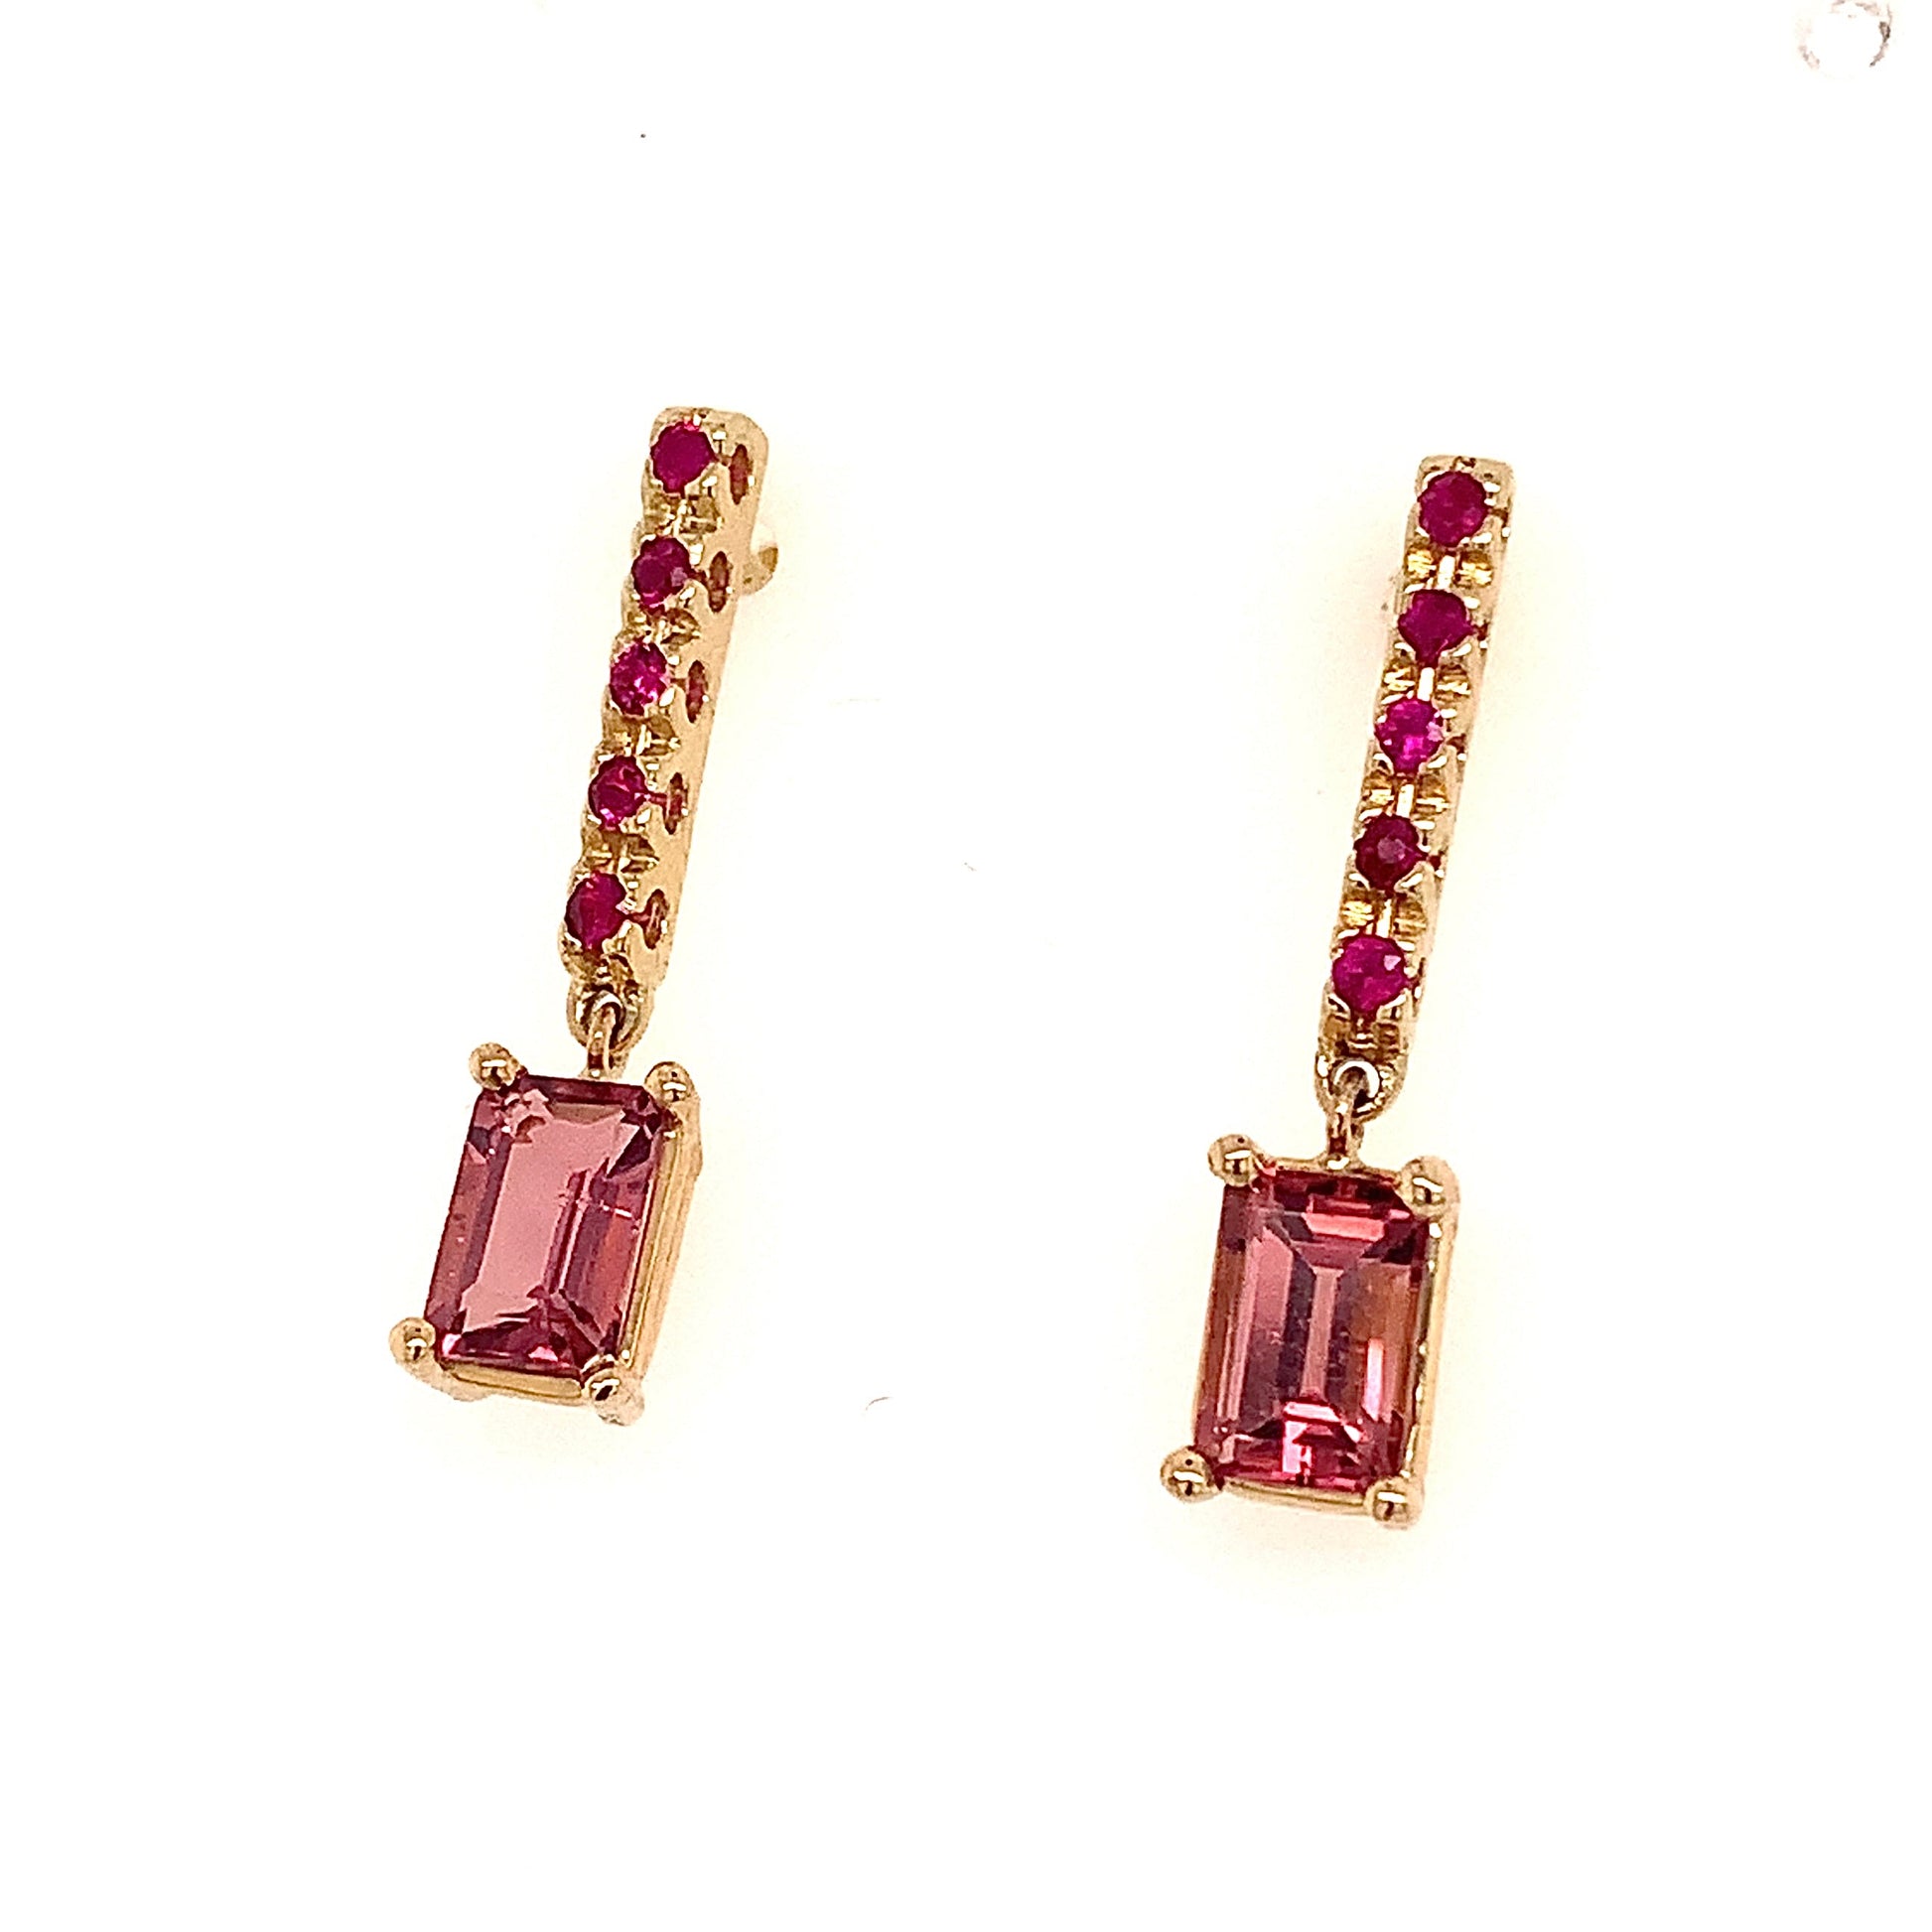 Rubellite Tourmaline Ruby Earrings 14k Gold 1.25 TCW Certified $3,950 018676 - Certified Fine Jewelry